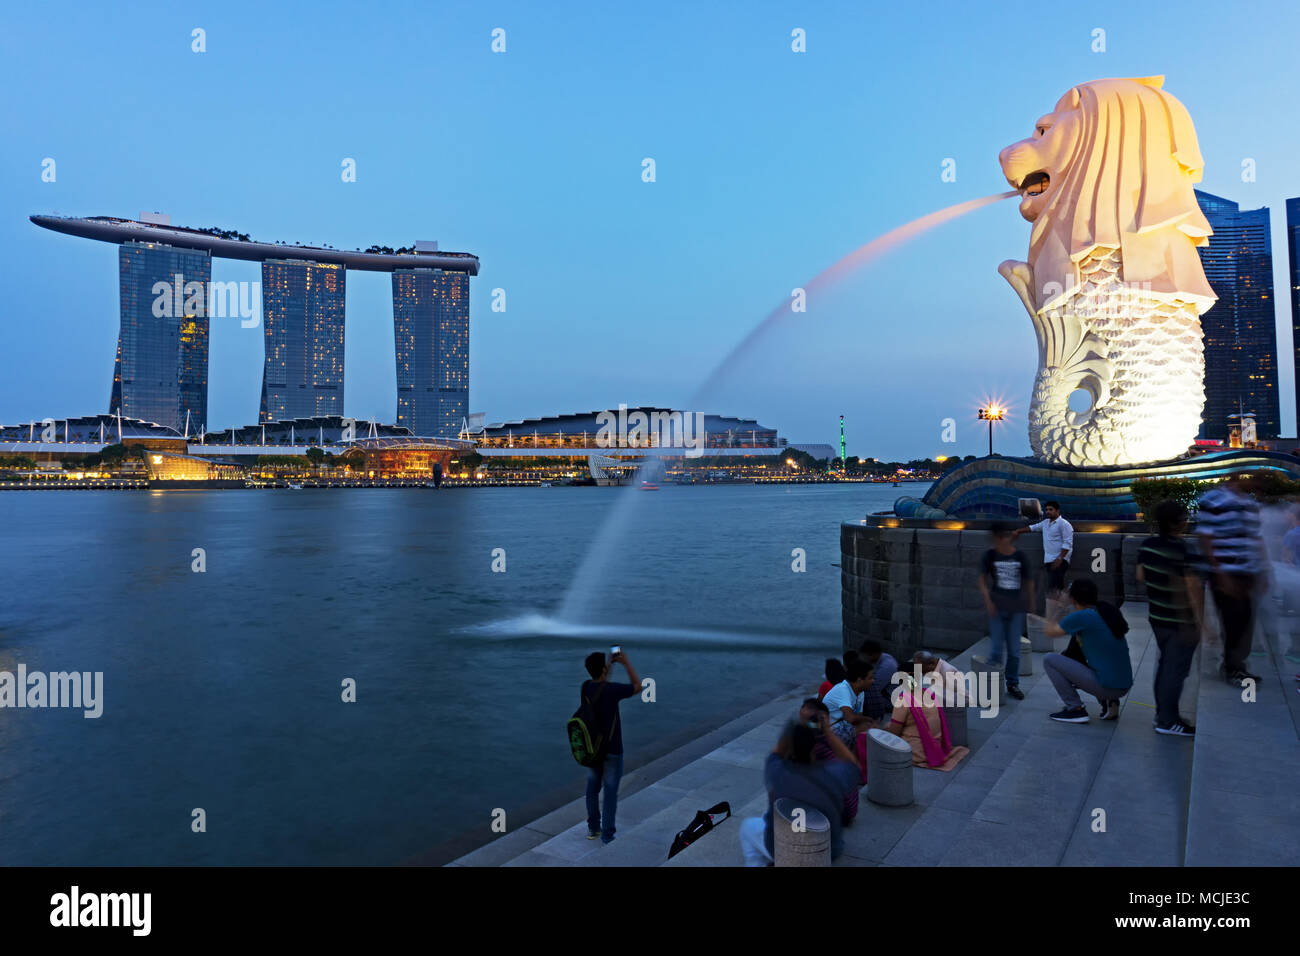 La ville de Singapour, Singapour - Février 10, 2018 : Avis de statue du Merlion, célèbre monument à Singapour. Banque D'Images